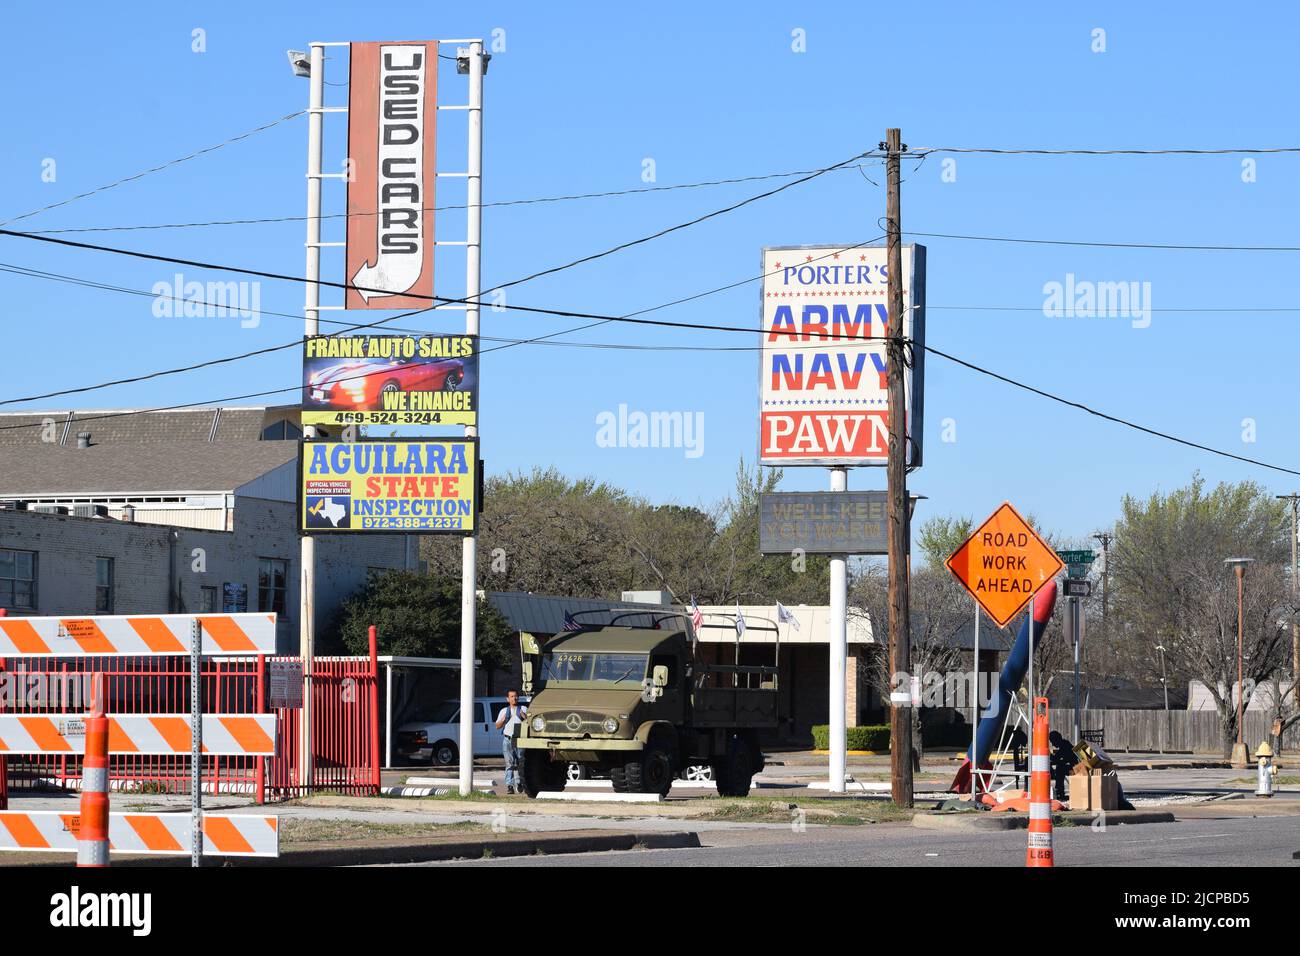 Carretera en construcción con letreros sobre los coches usados de publicidad y una tienda de la Armada del Ejército y una tienda de peones Foto de stock